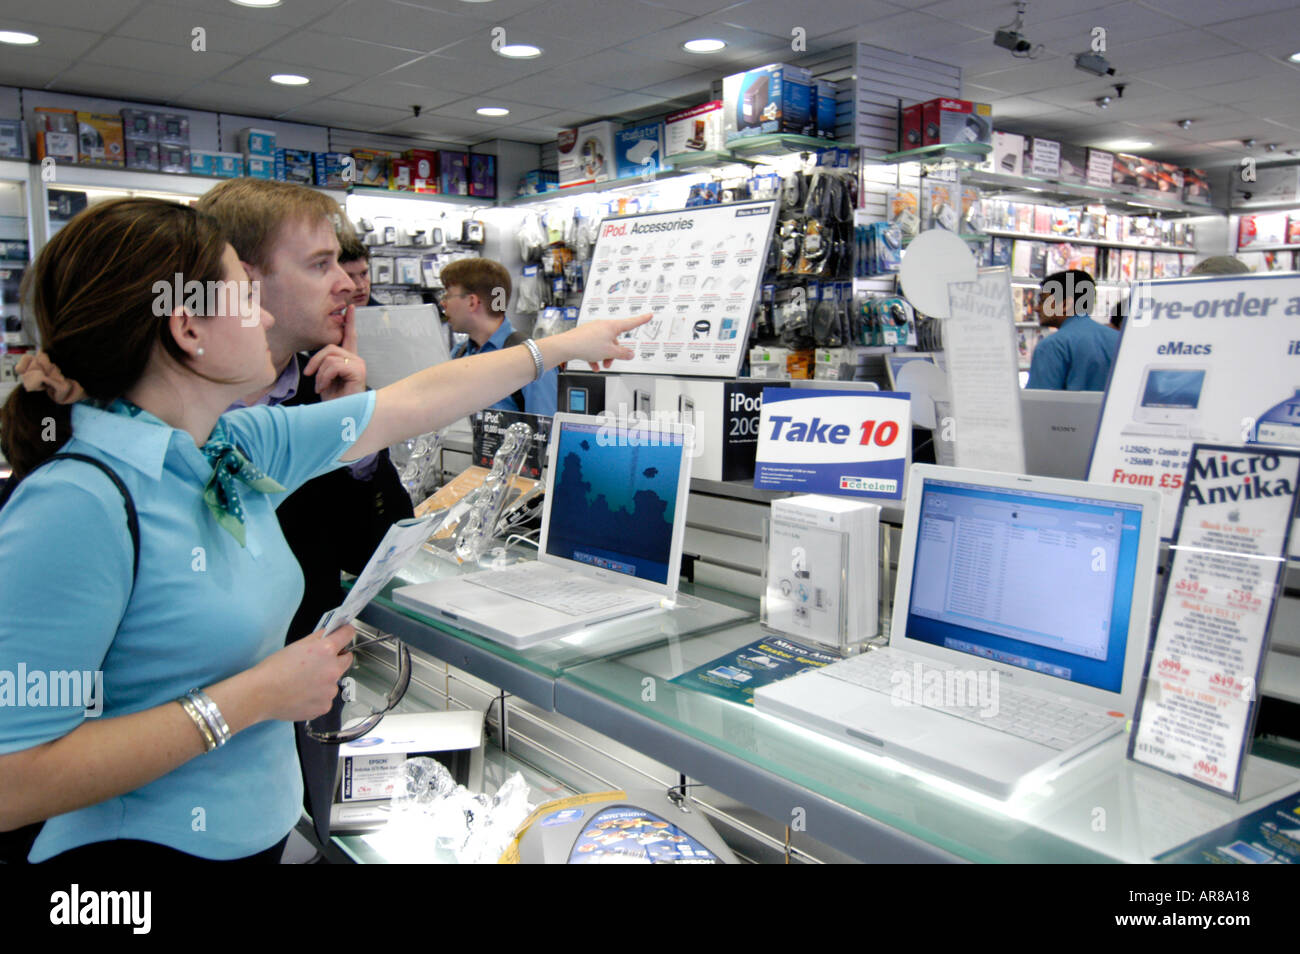 Shopping für Laptops in Micro Anvika paar speichern, London, England, Großbritannien, UK Stockfoto